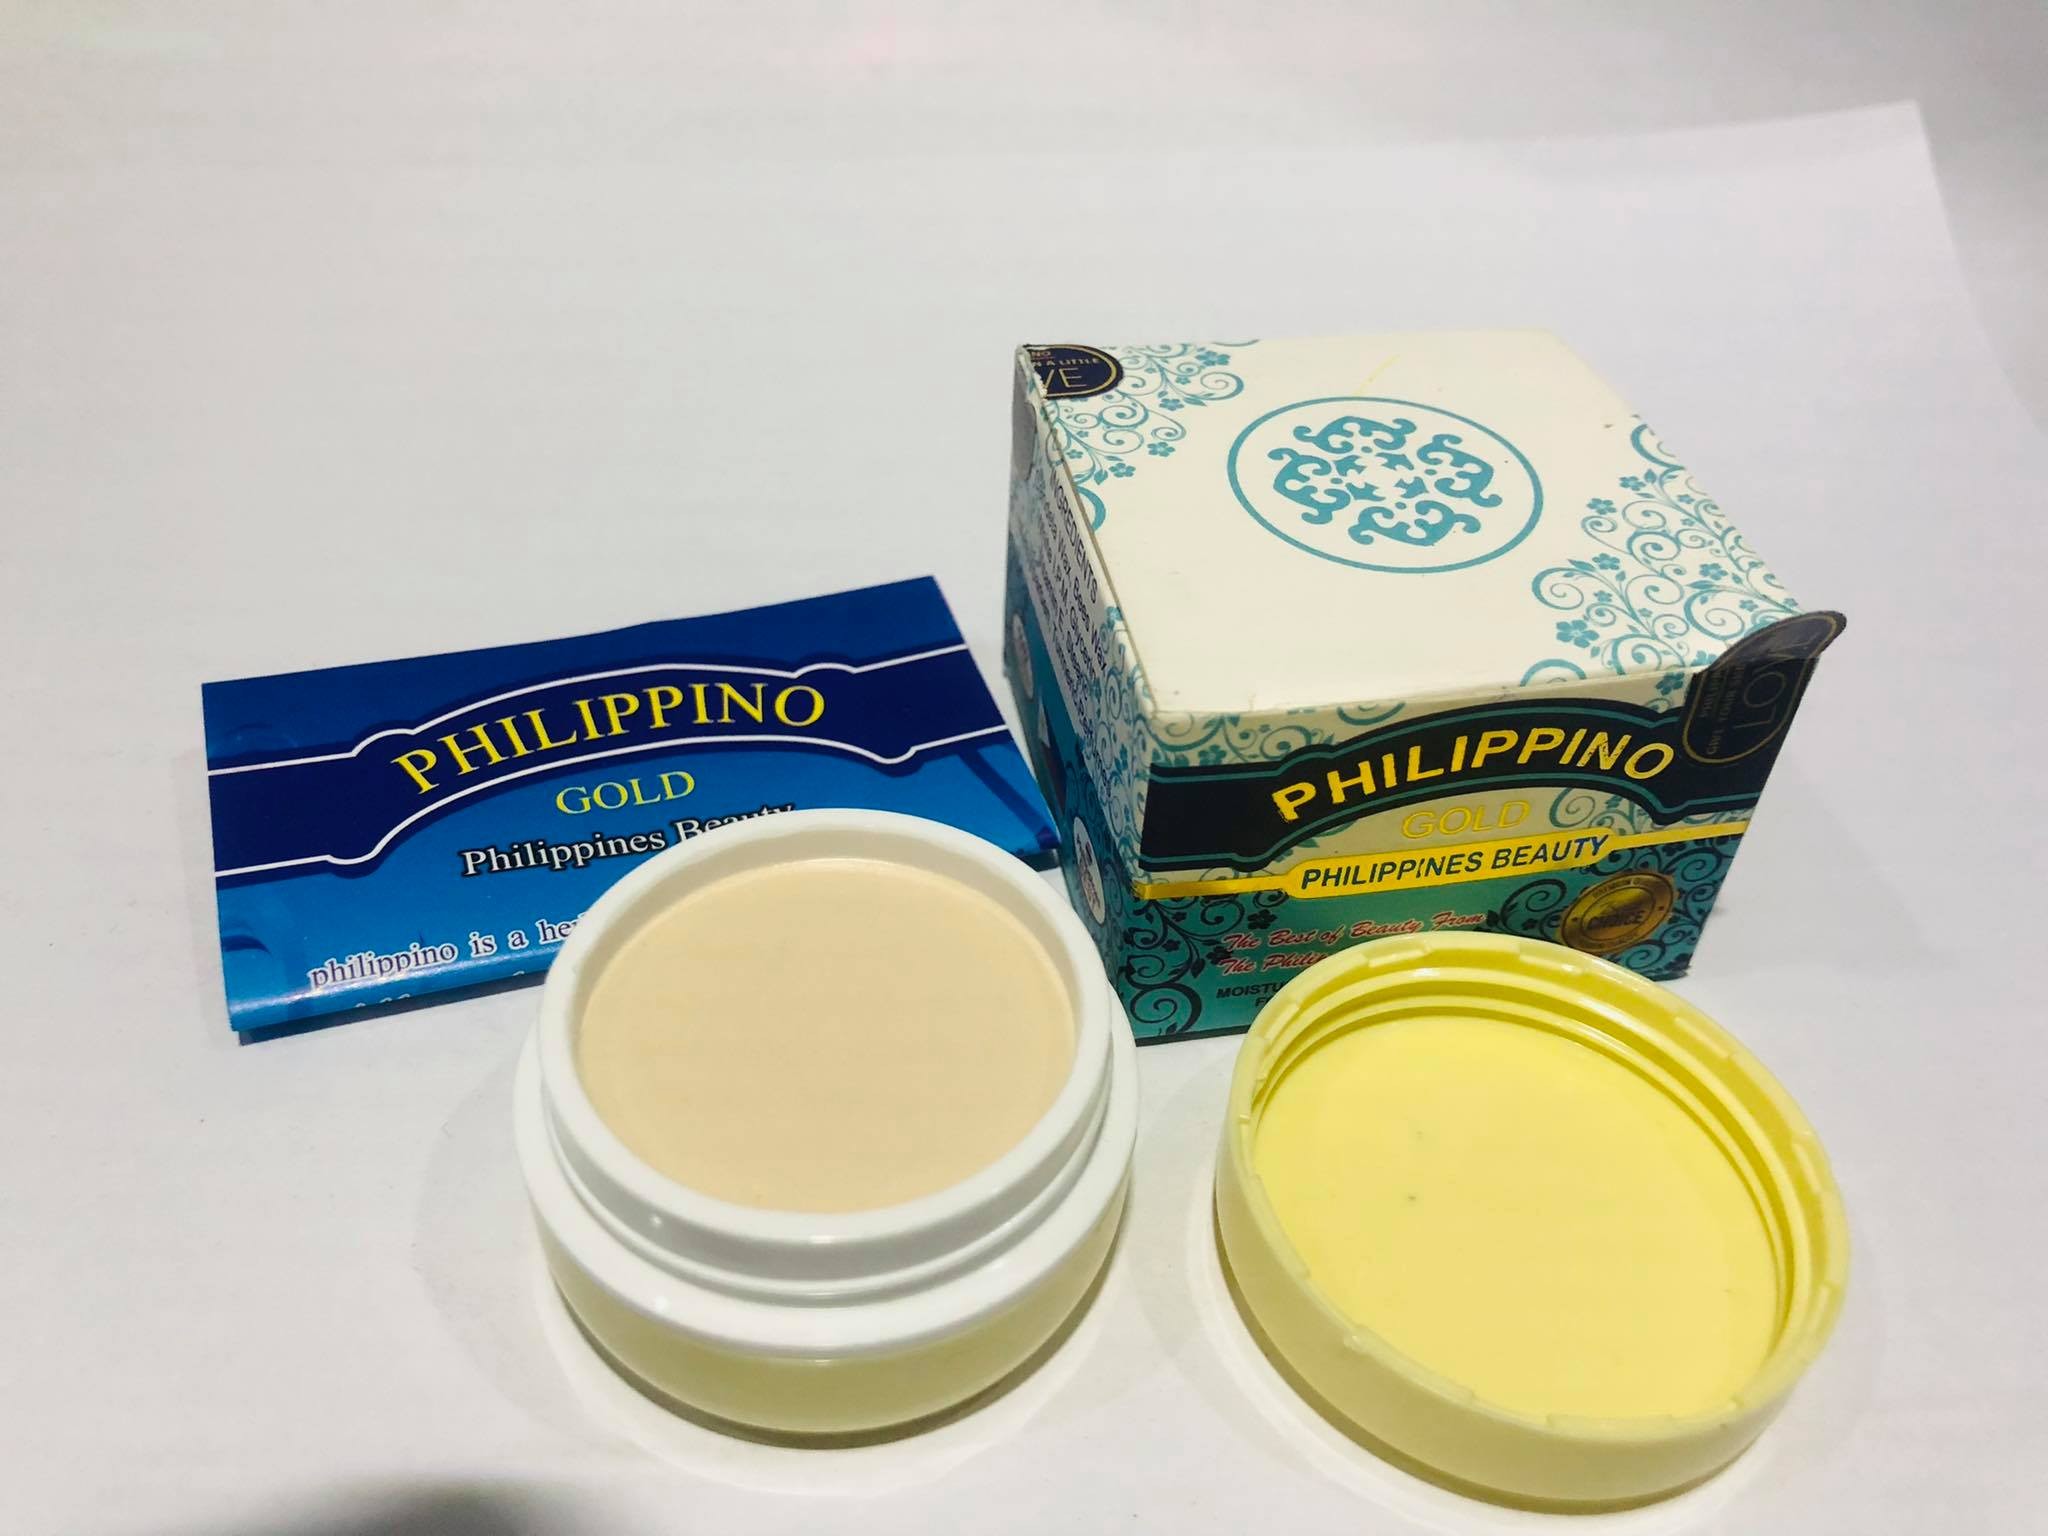 Philppino gold Face cream